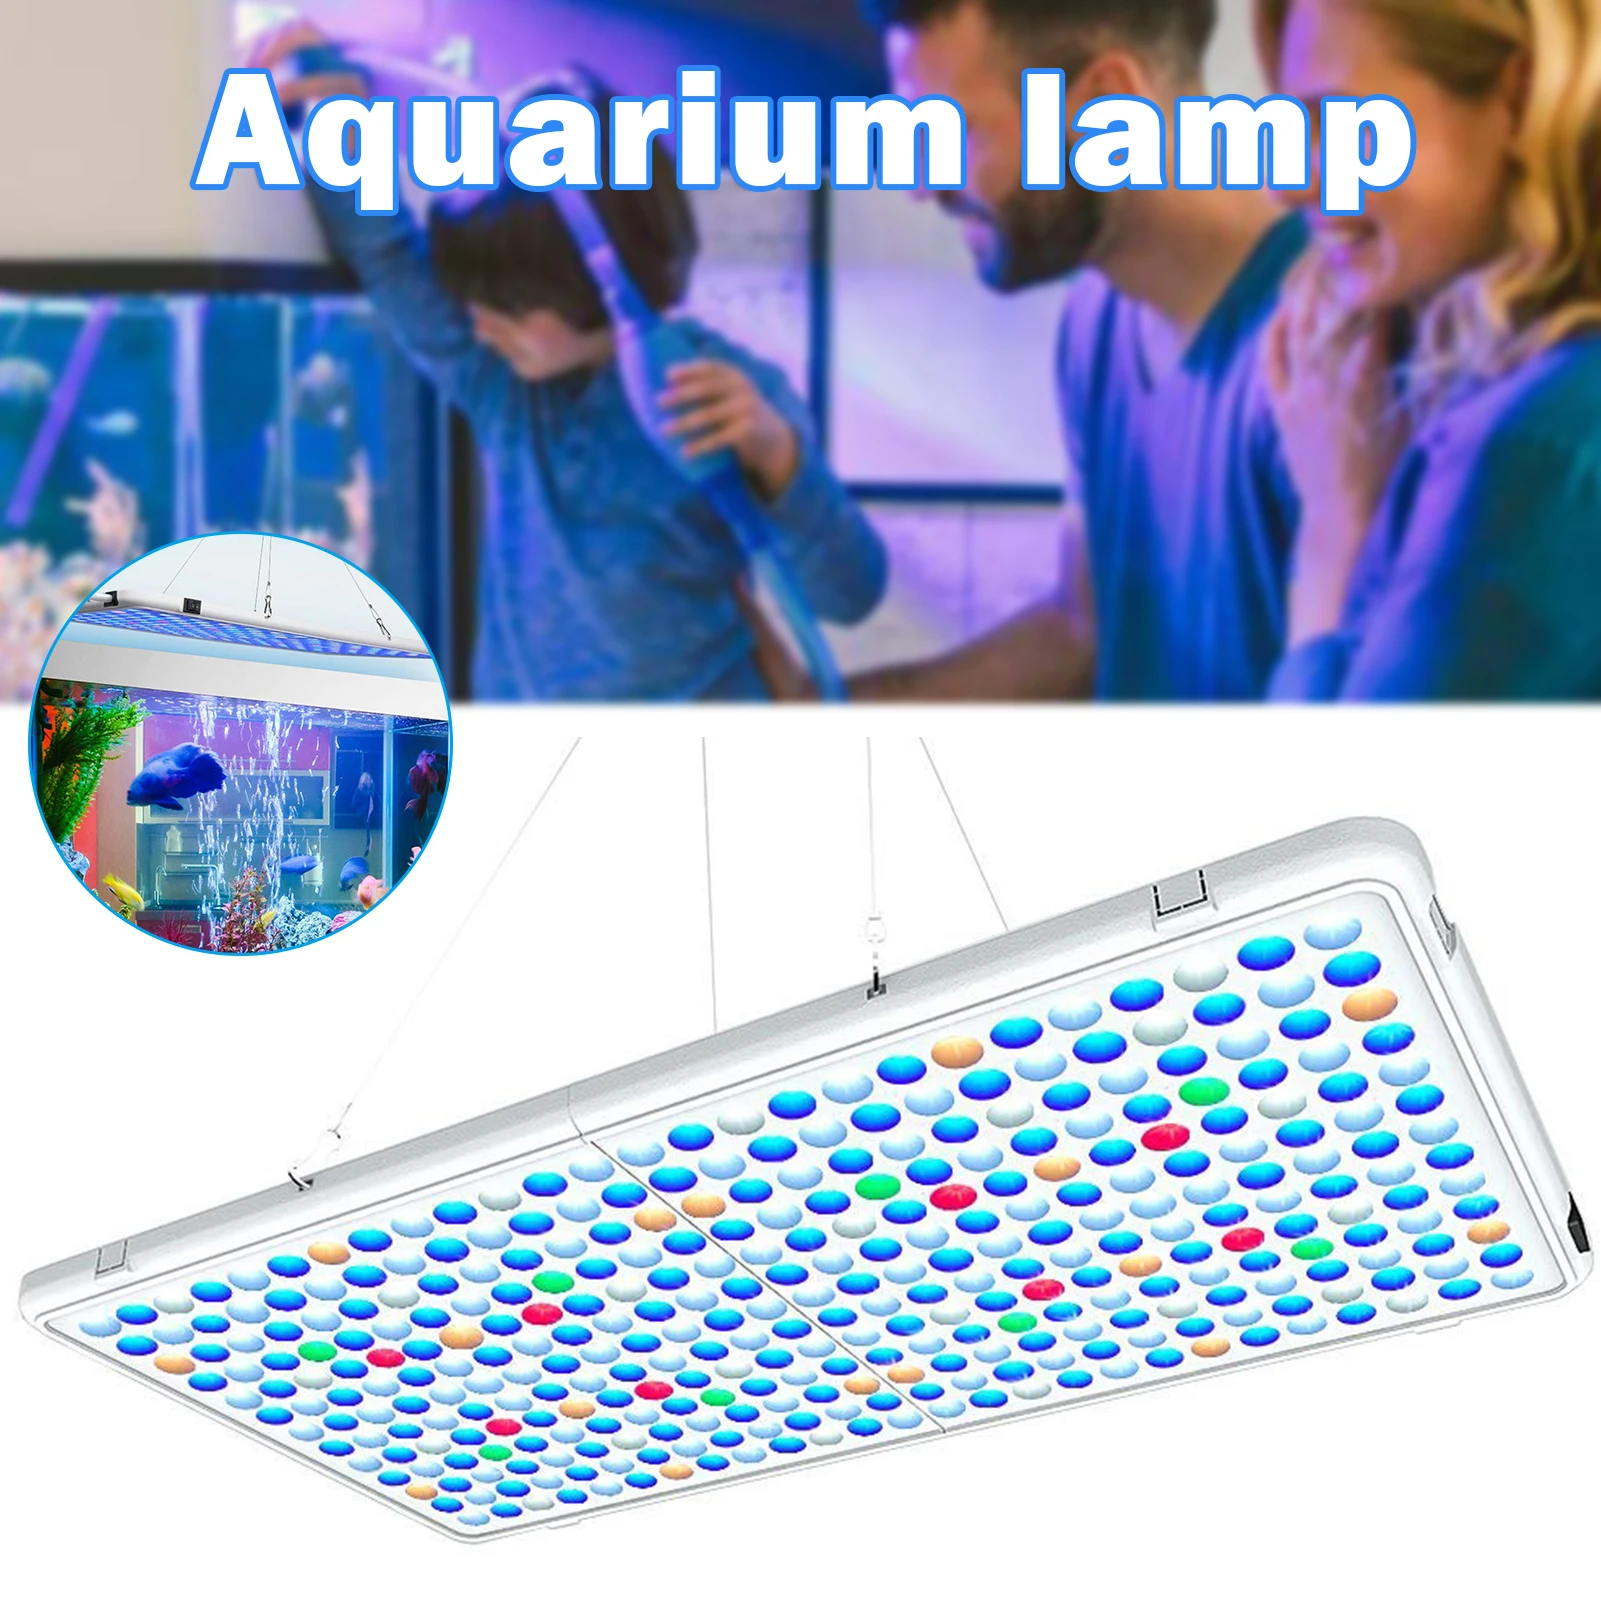 저렴한 LED 수족관 조명 전체 스펙트럼 밝기 조절 조명 램프, 물고기 탱크 담수 및 바닷물 P7Ding